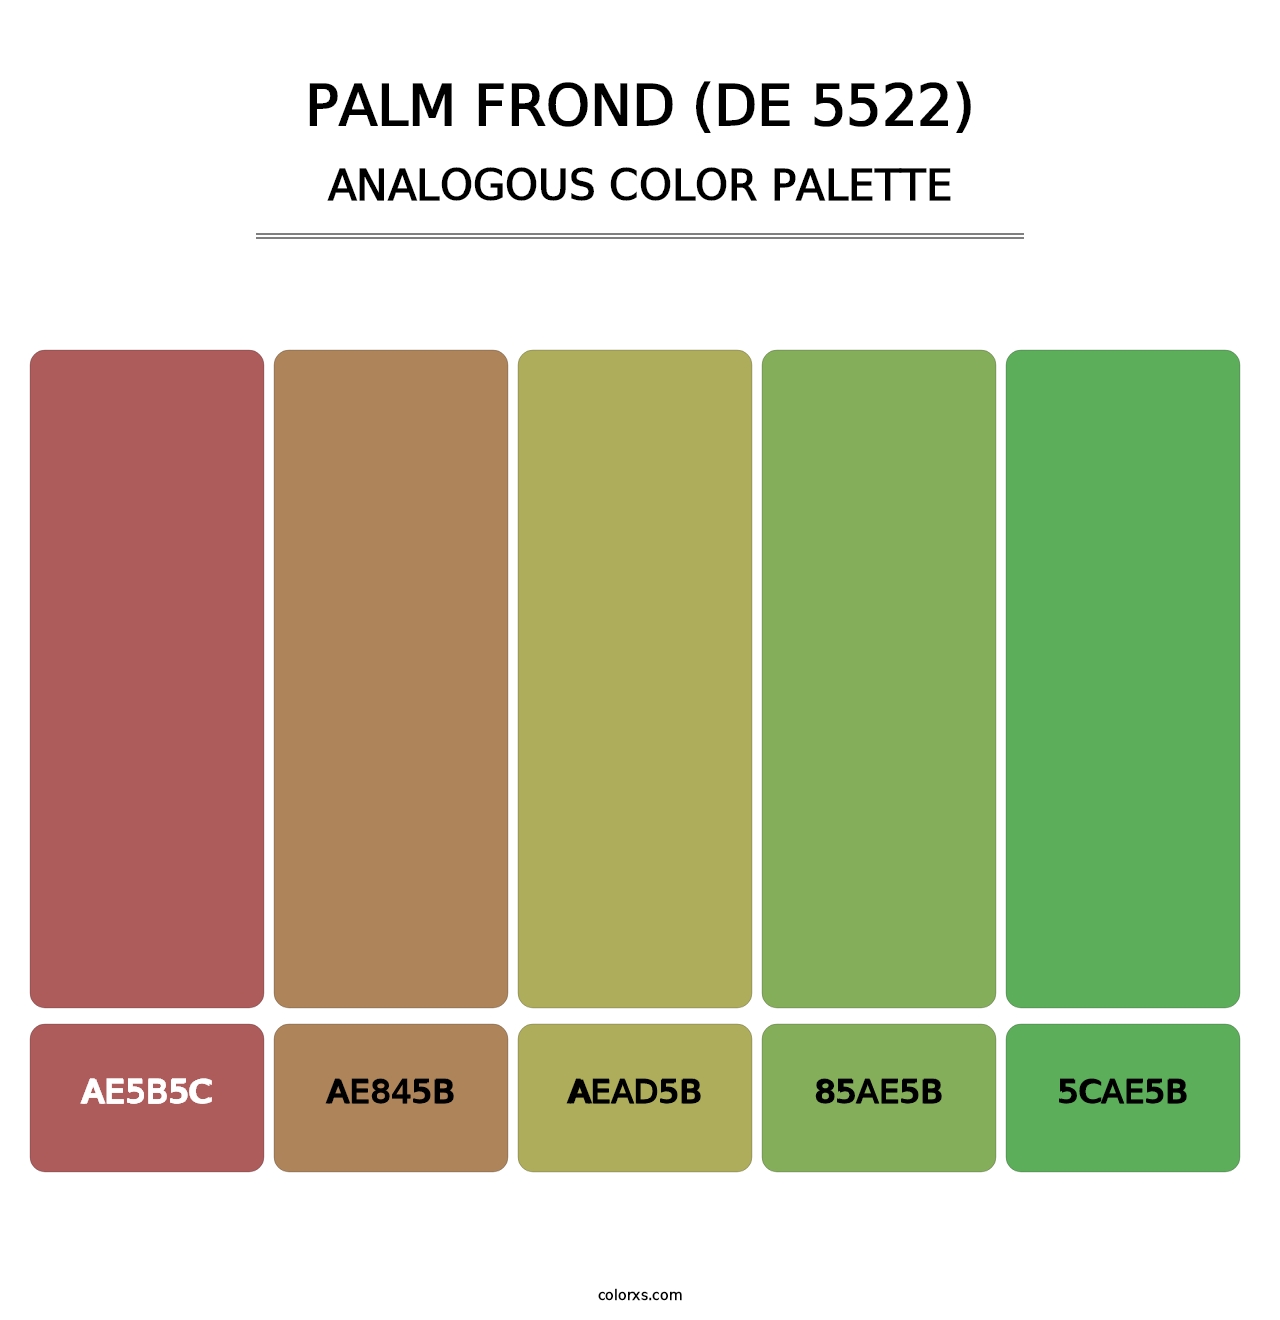 Palm Frond (DE 5522) - Analogous Color Palette